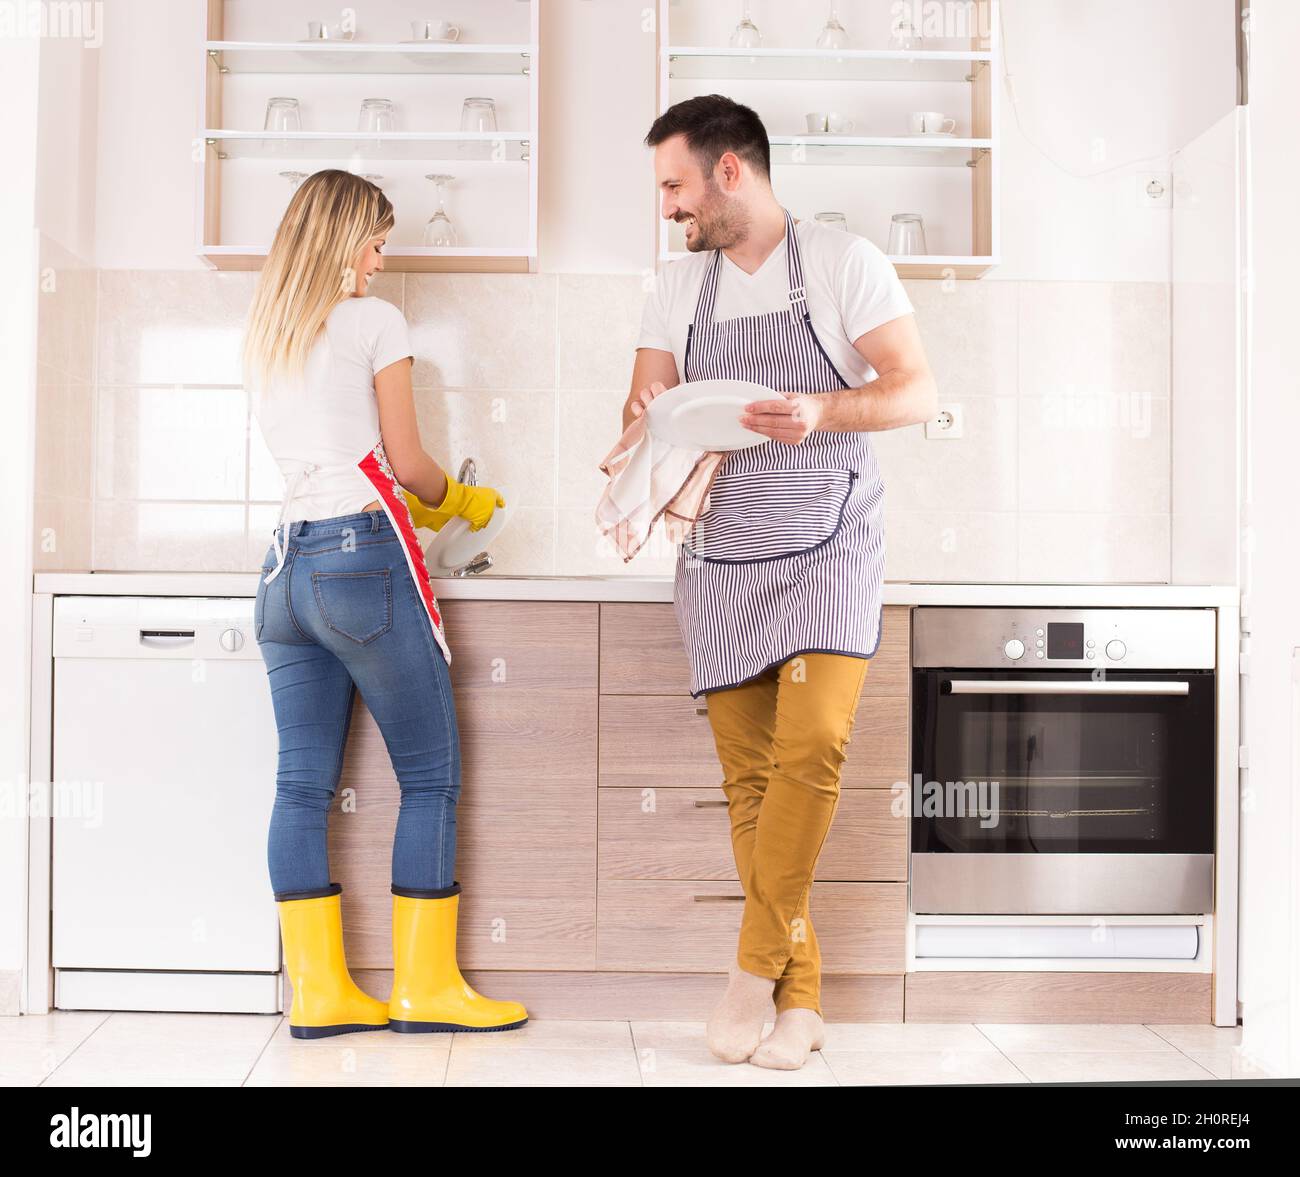 Glückliches junges Paar, das in der Küche Geschirr wascht und abwischt Stockfoto